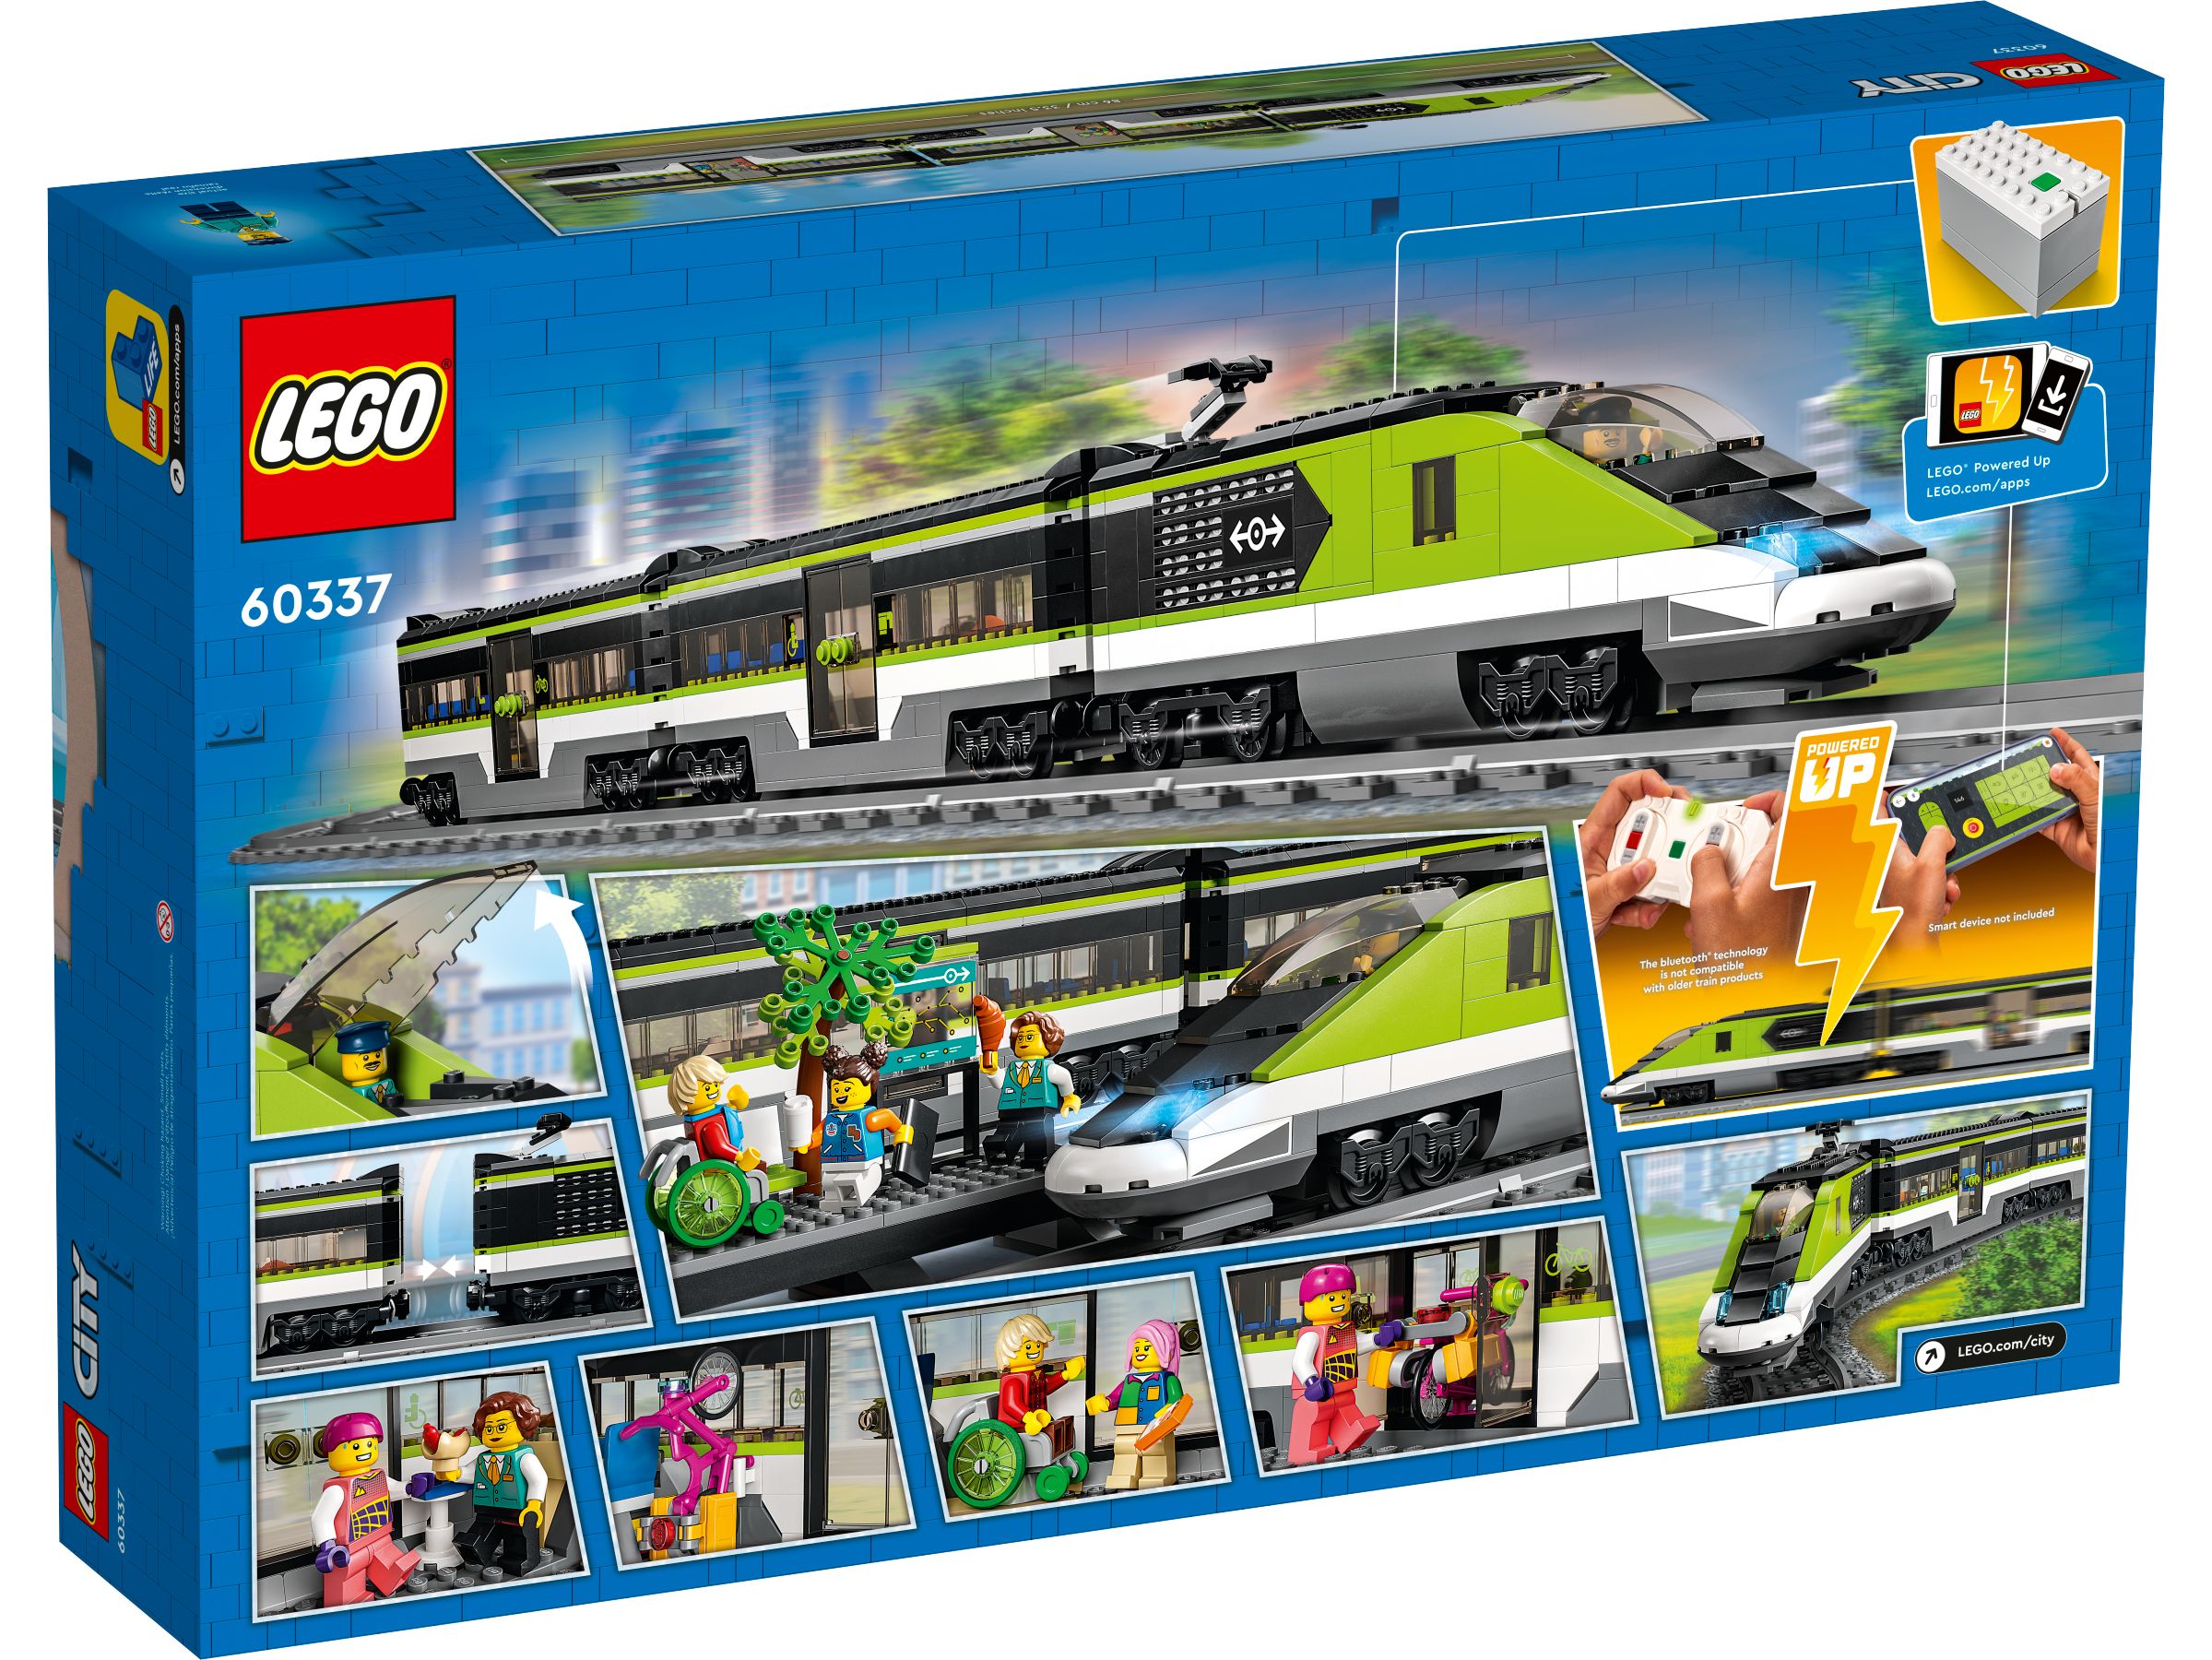 LEGO City 60337 Personen-Schnellzug LEGO_60337_alt12.jpg